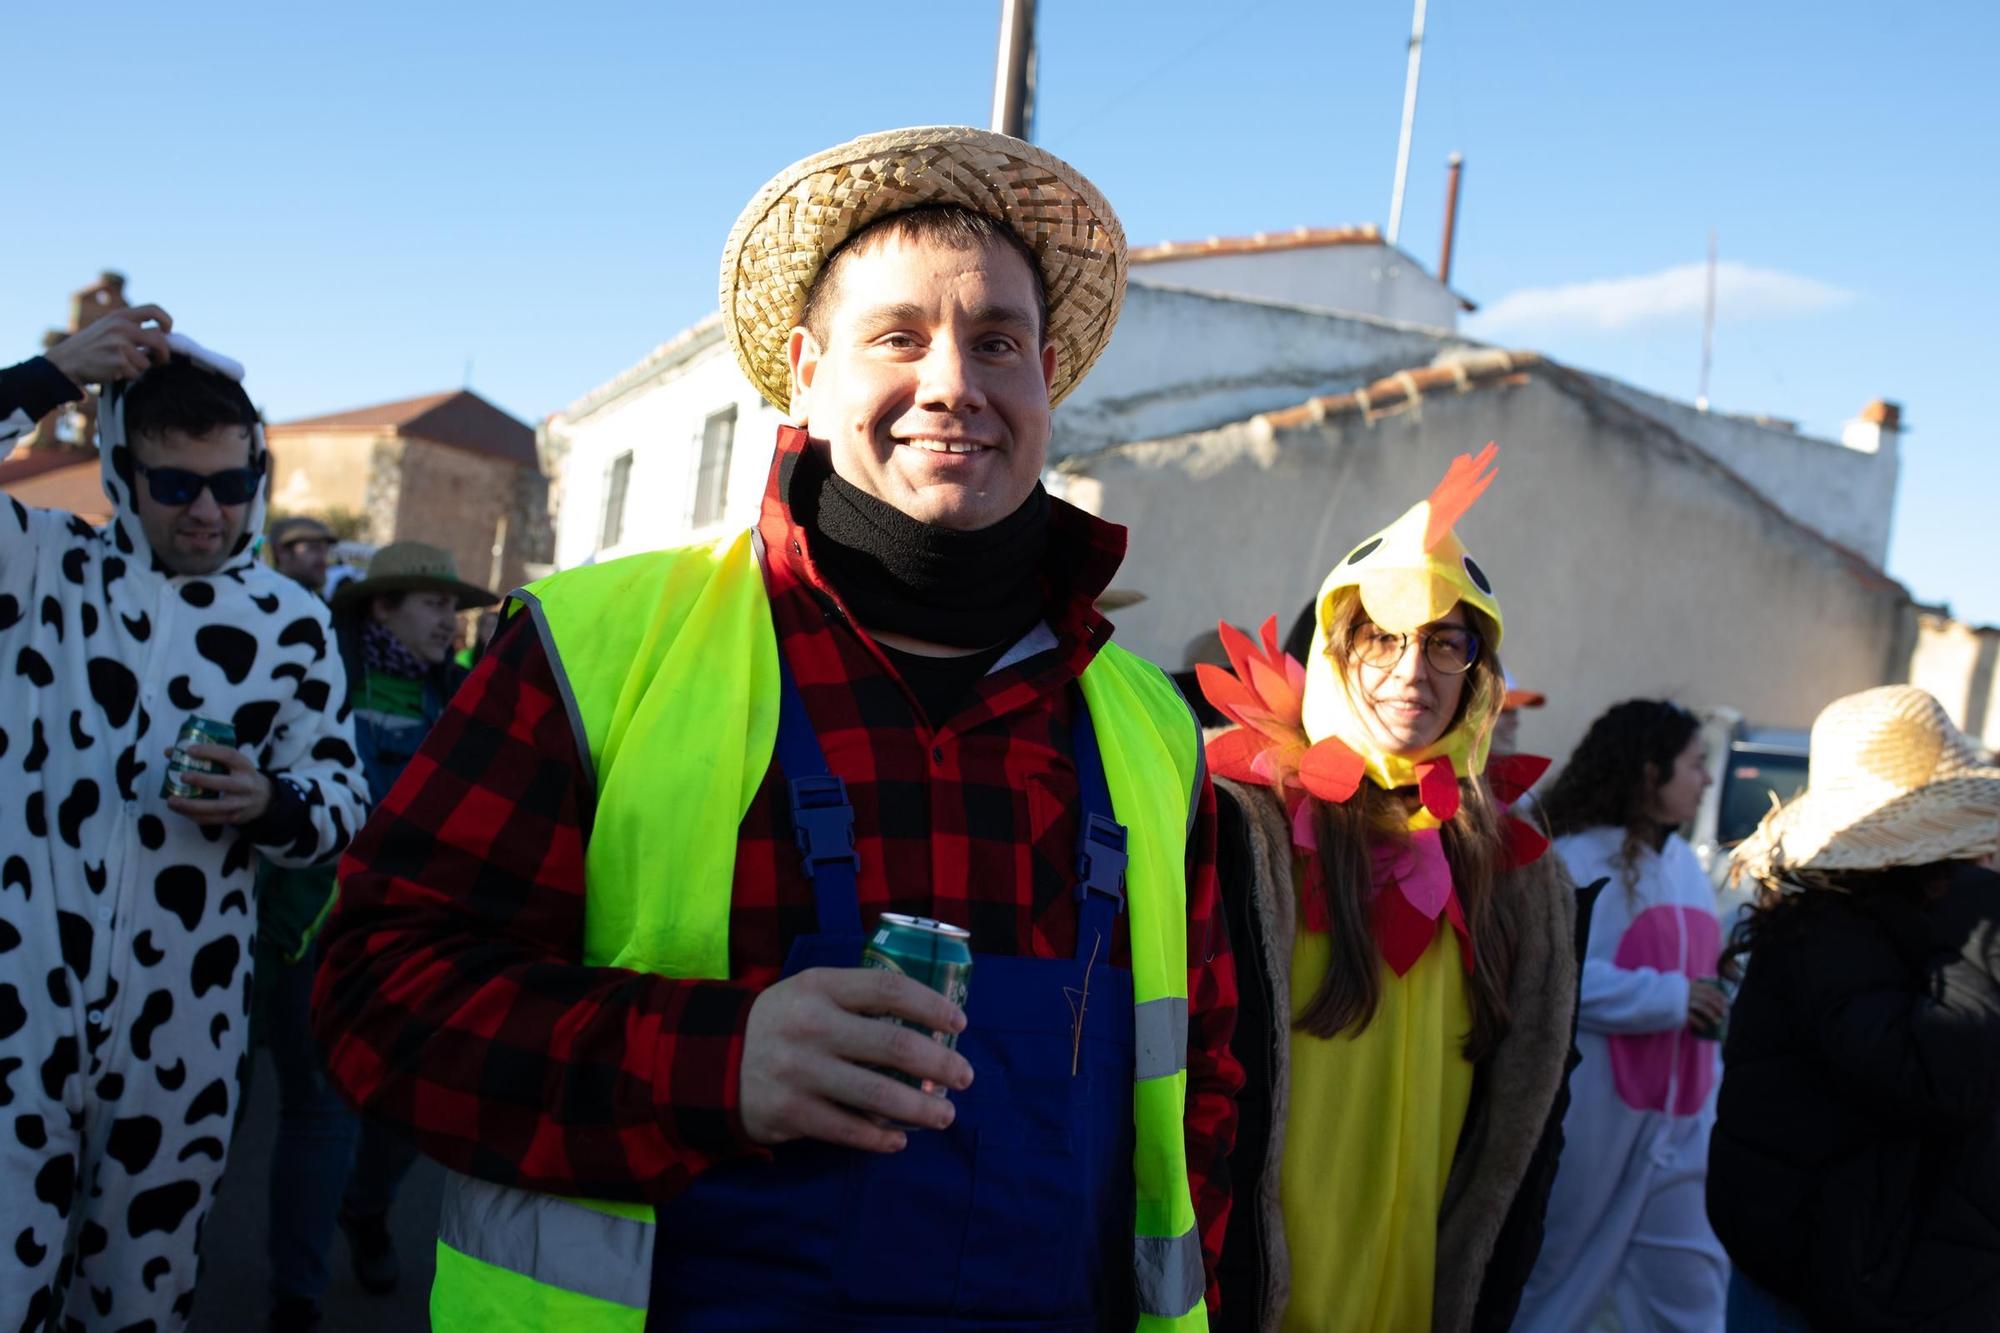 GALERÍA | Desfile del X Antruejo en Montamarta